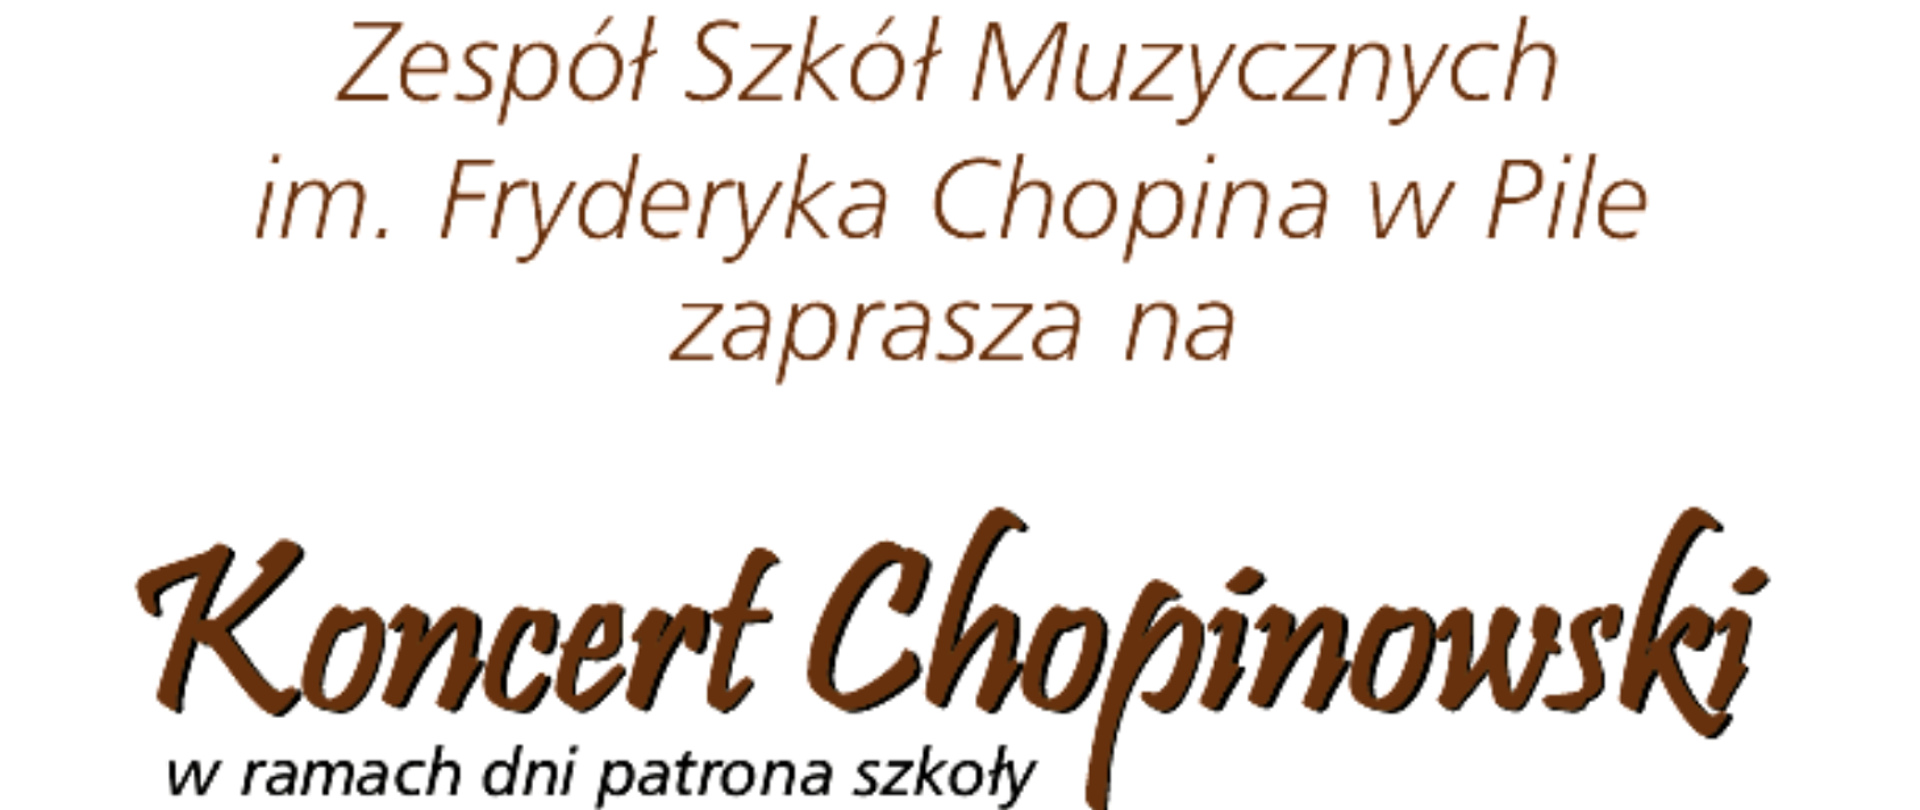 Logo Koncert Chopinowski - na białym tle brązowy napis Zespół Szkół Muzycznych im. Fryderyka Chopina w Pile zaprasza na Koncert Chopinowski w ramach dni patrona szkoły.